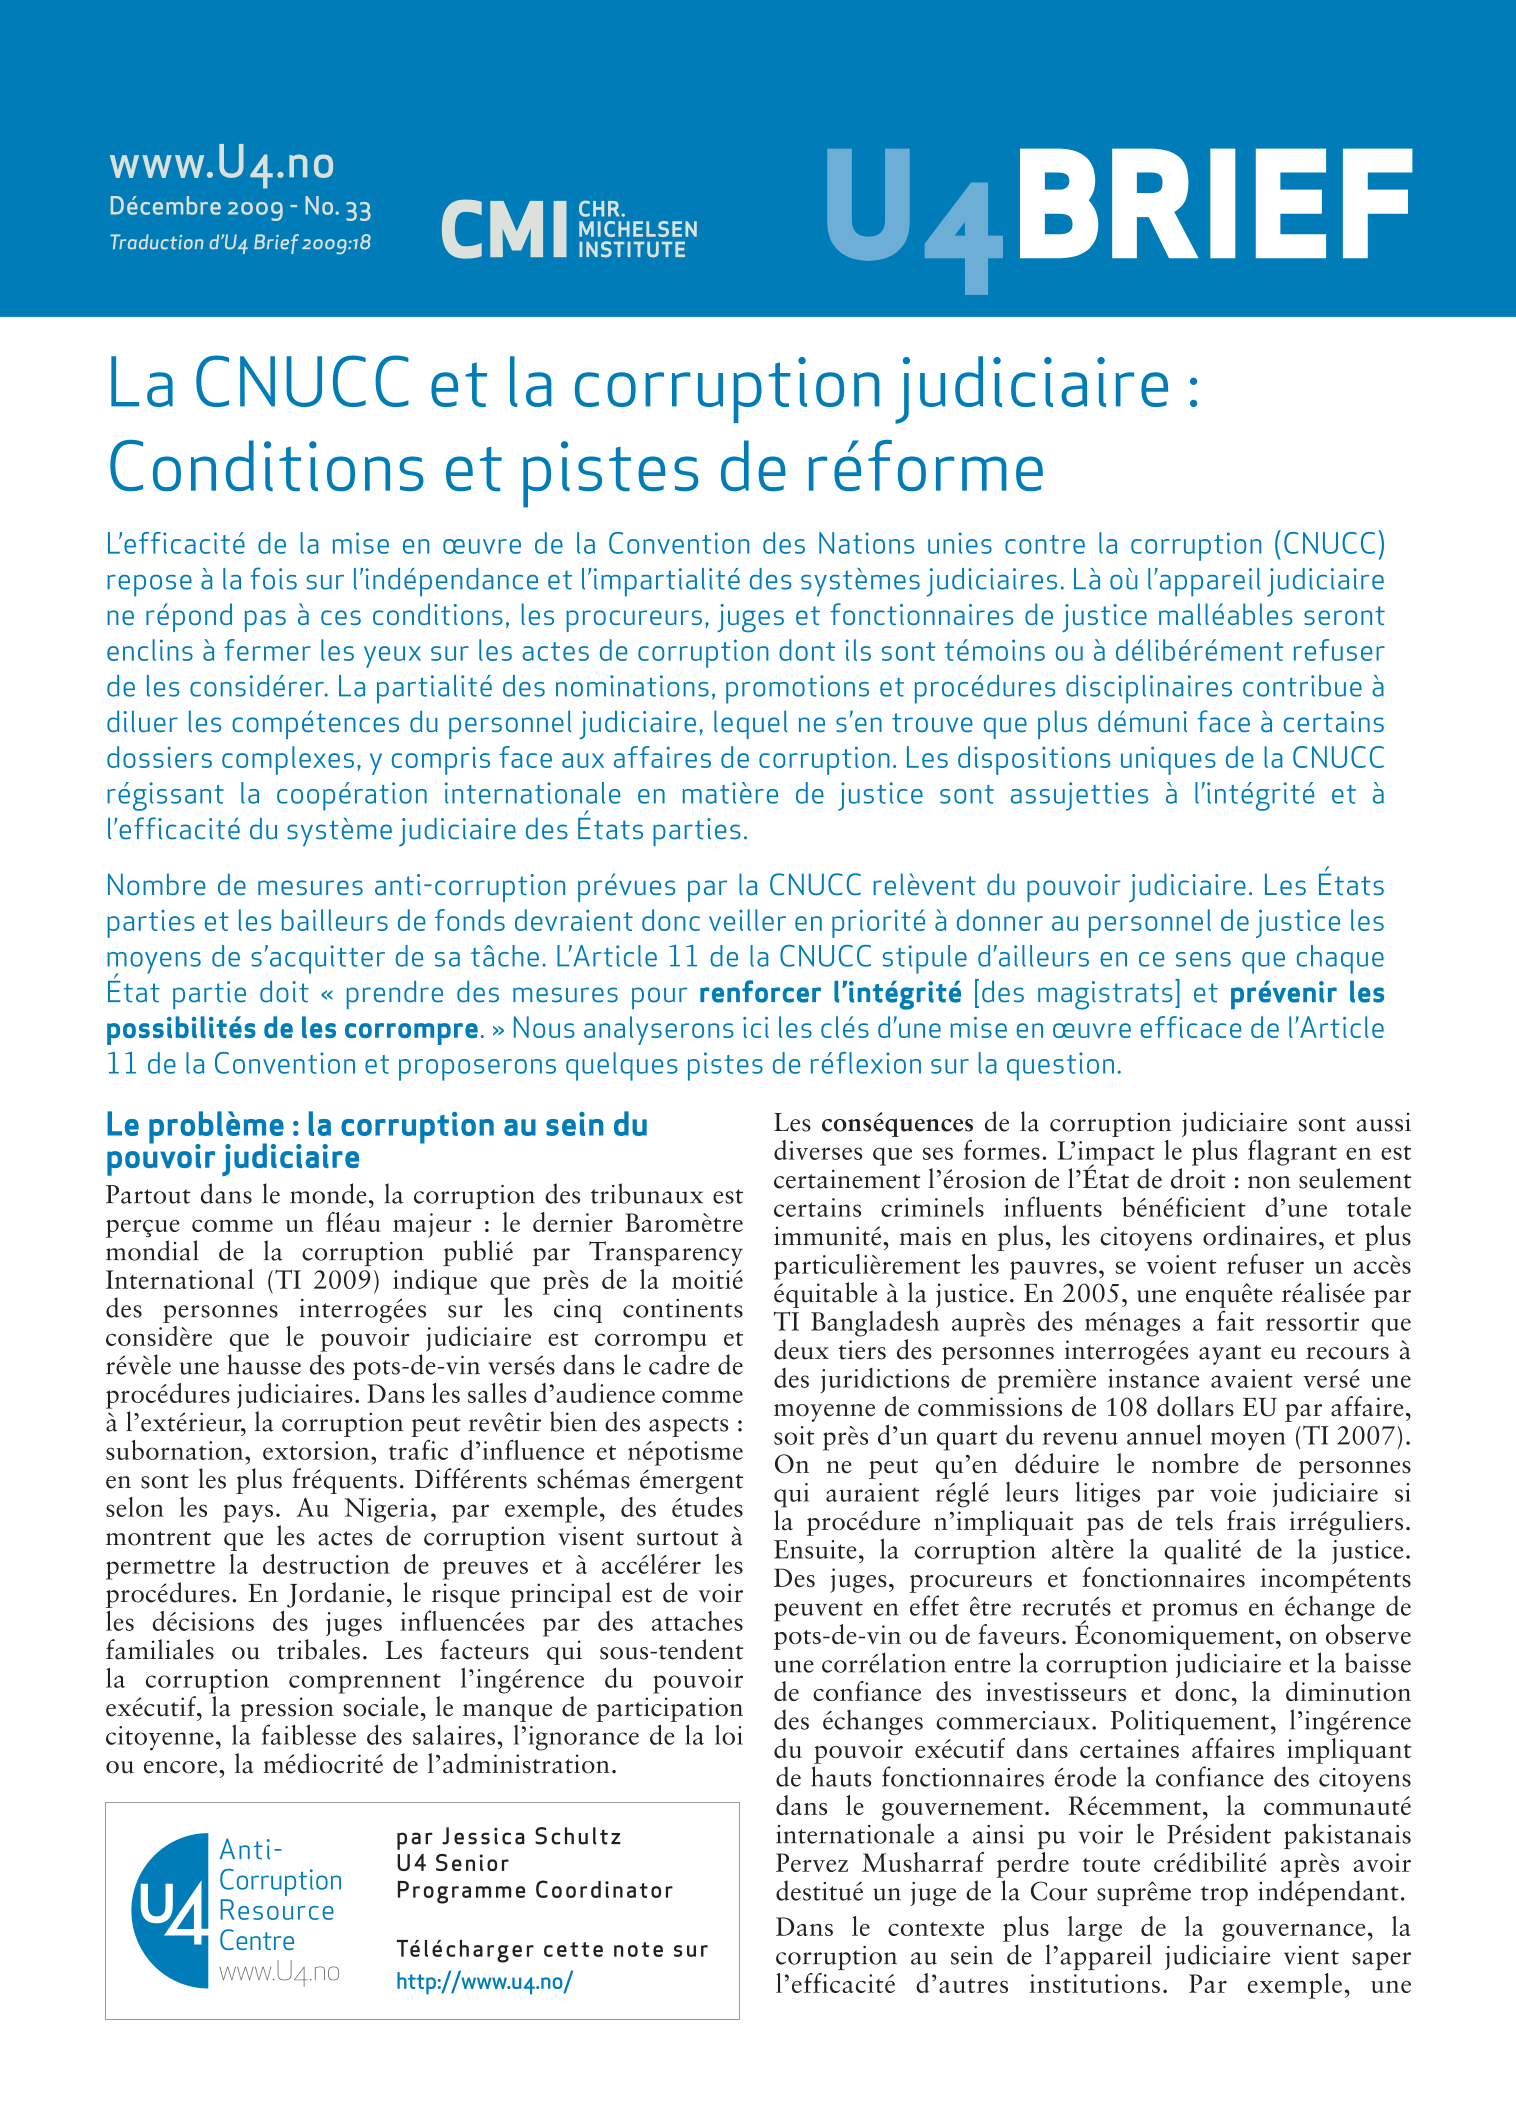 La CNUCC et la corruption judiciaire : Conditions et pistes de réforme